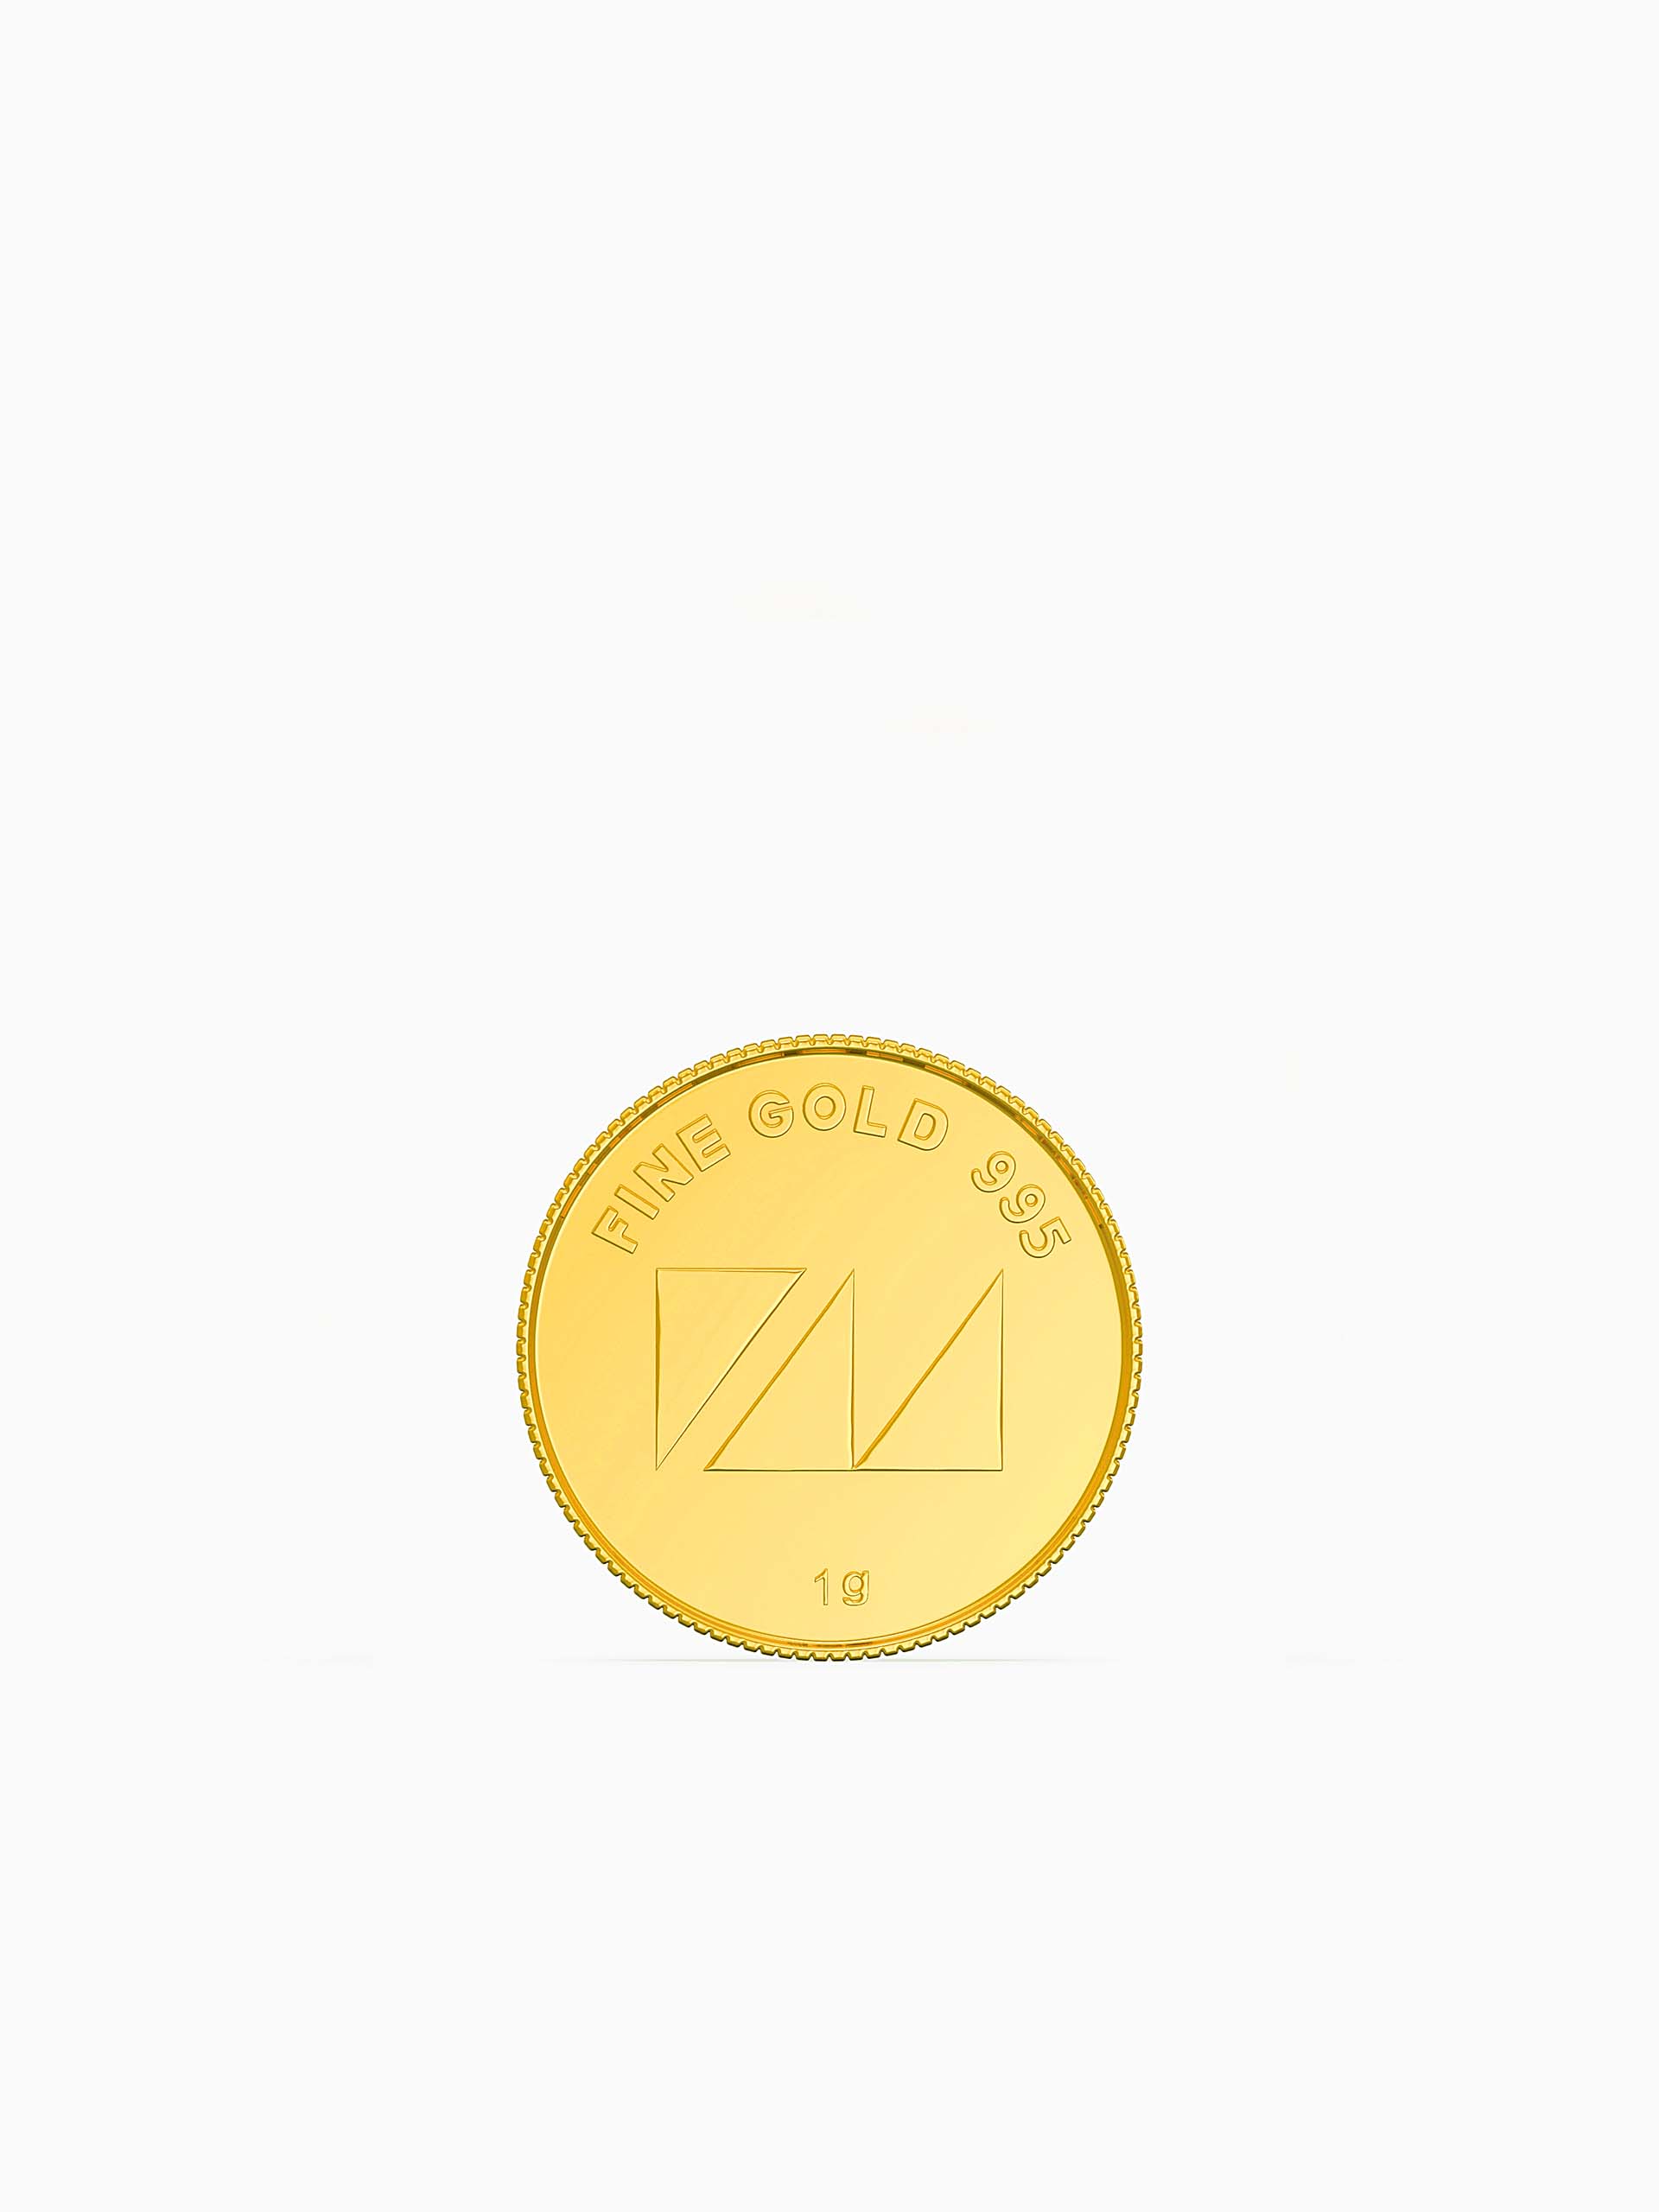 1 Gram 995 Purity Goddess Laxmi Gold Coin - Zest Mélange 